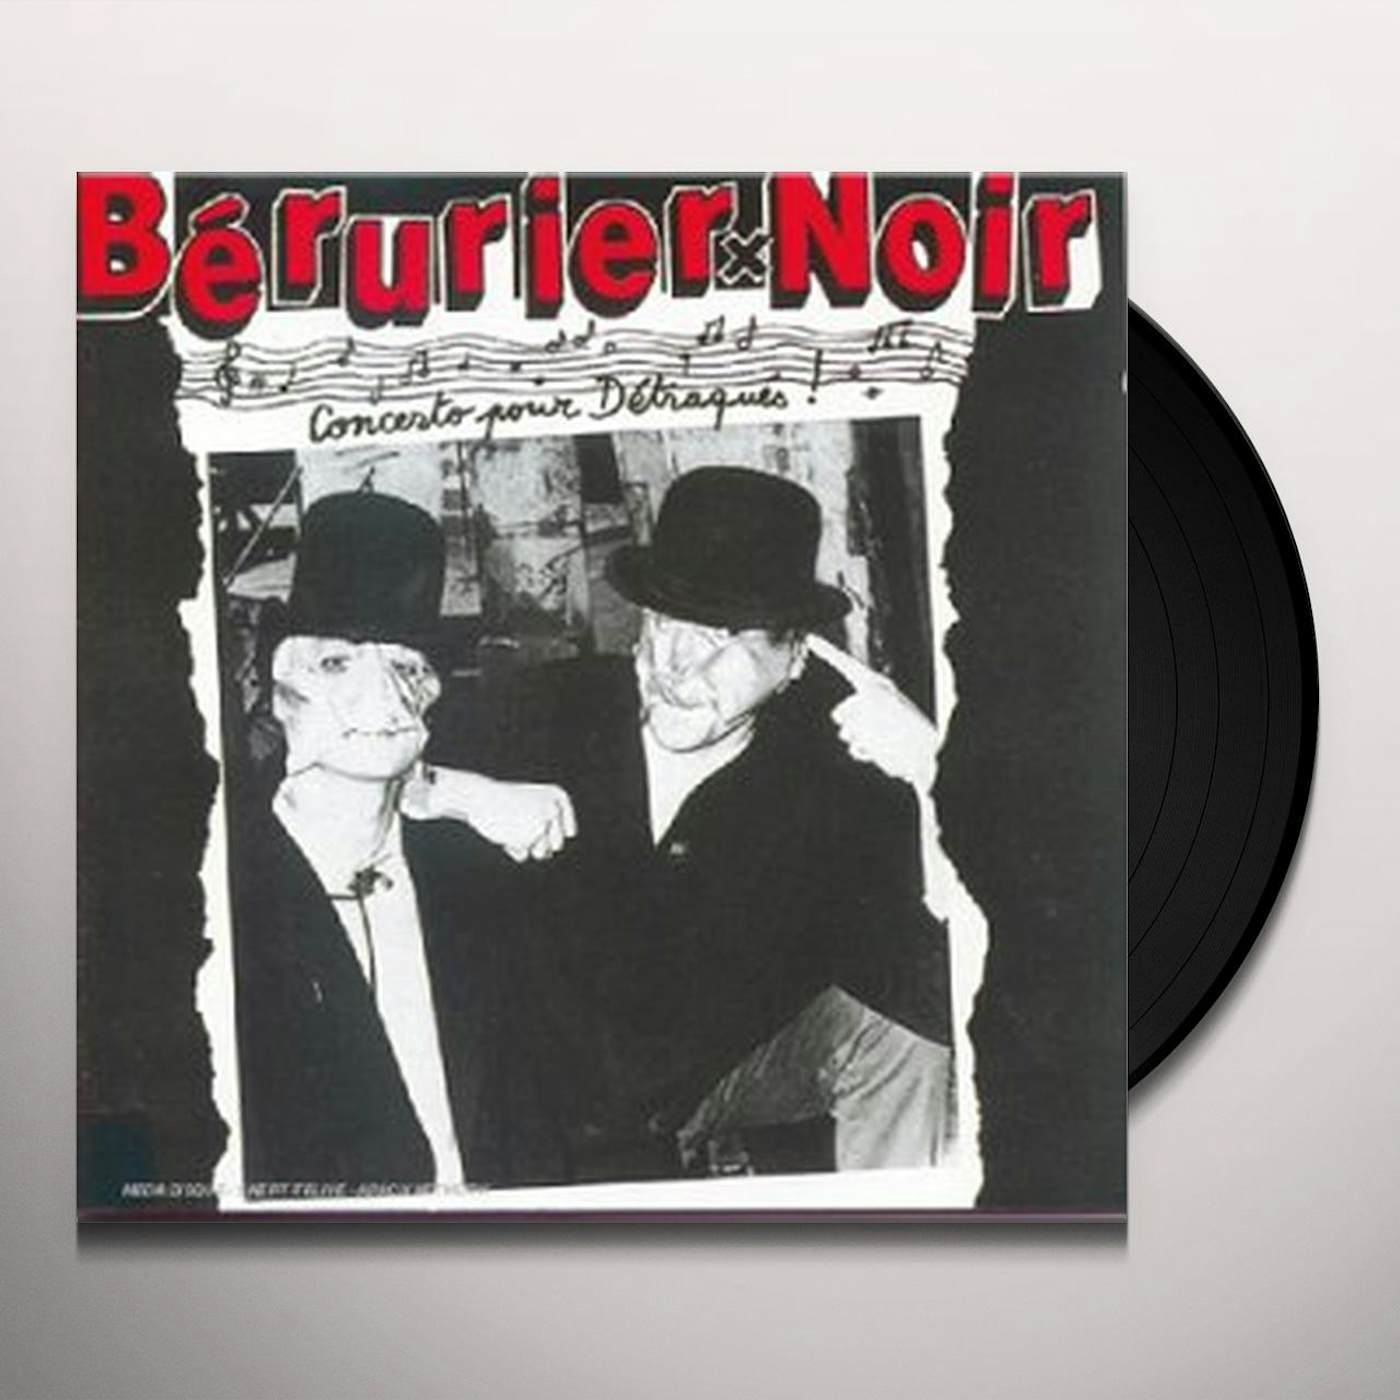 Bérurier Noir CONCERTO POUR DETRAQUES Vinyl Record